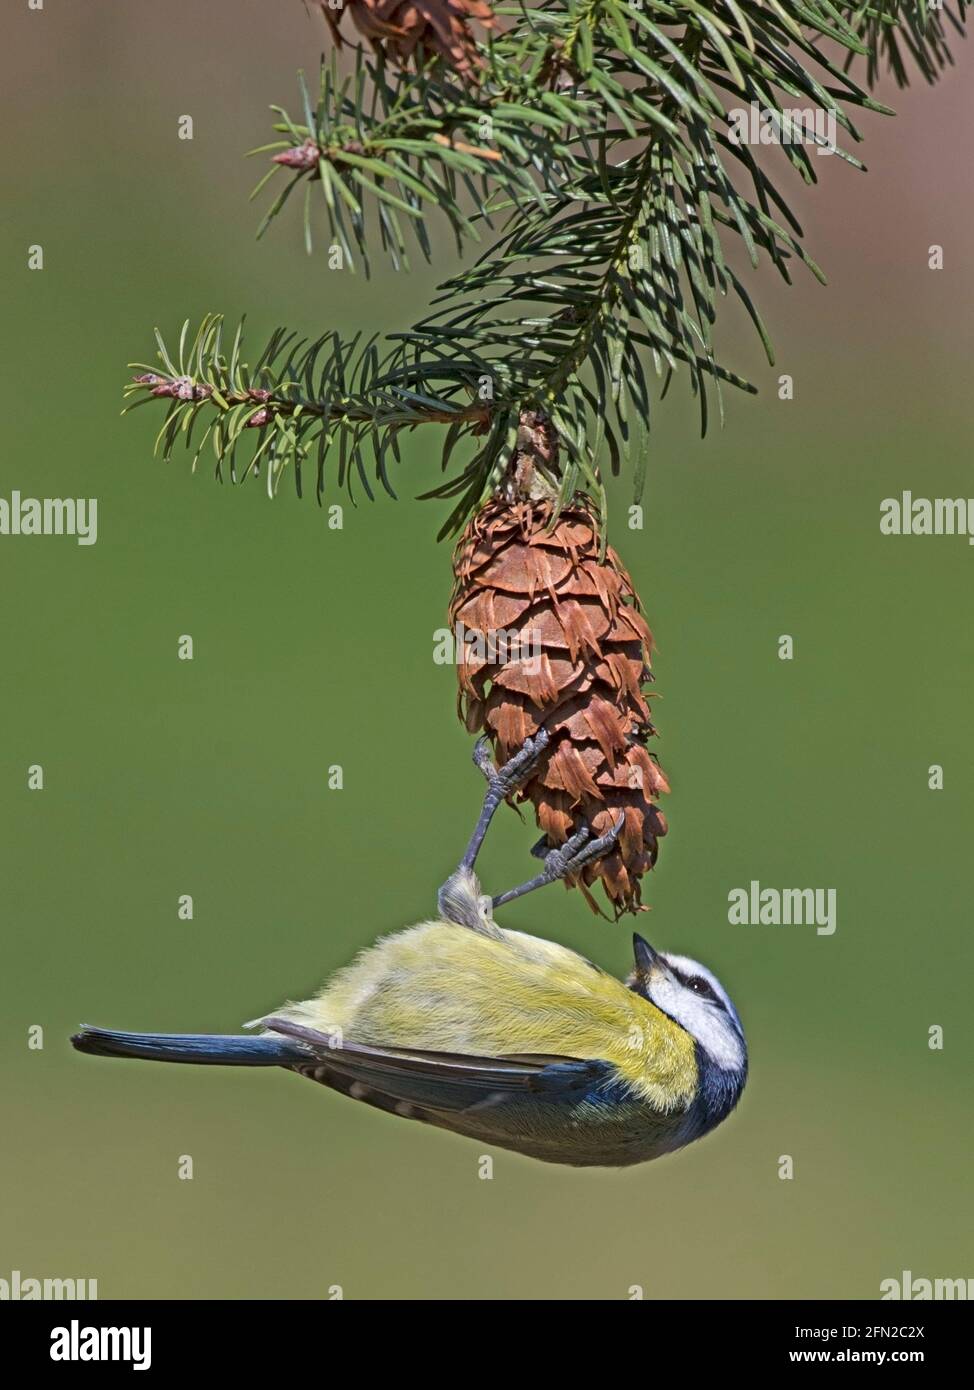 European blue tit feeding on pine cone Stock Photo